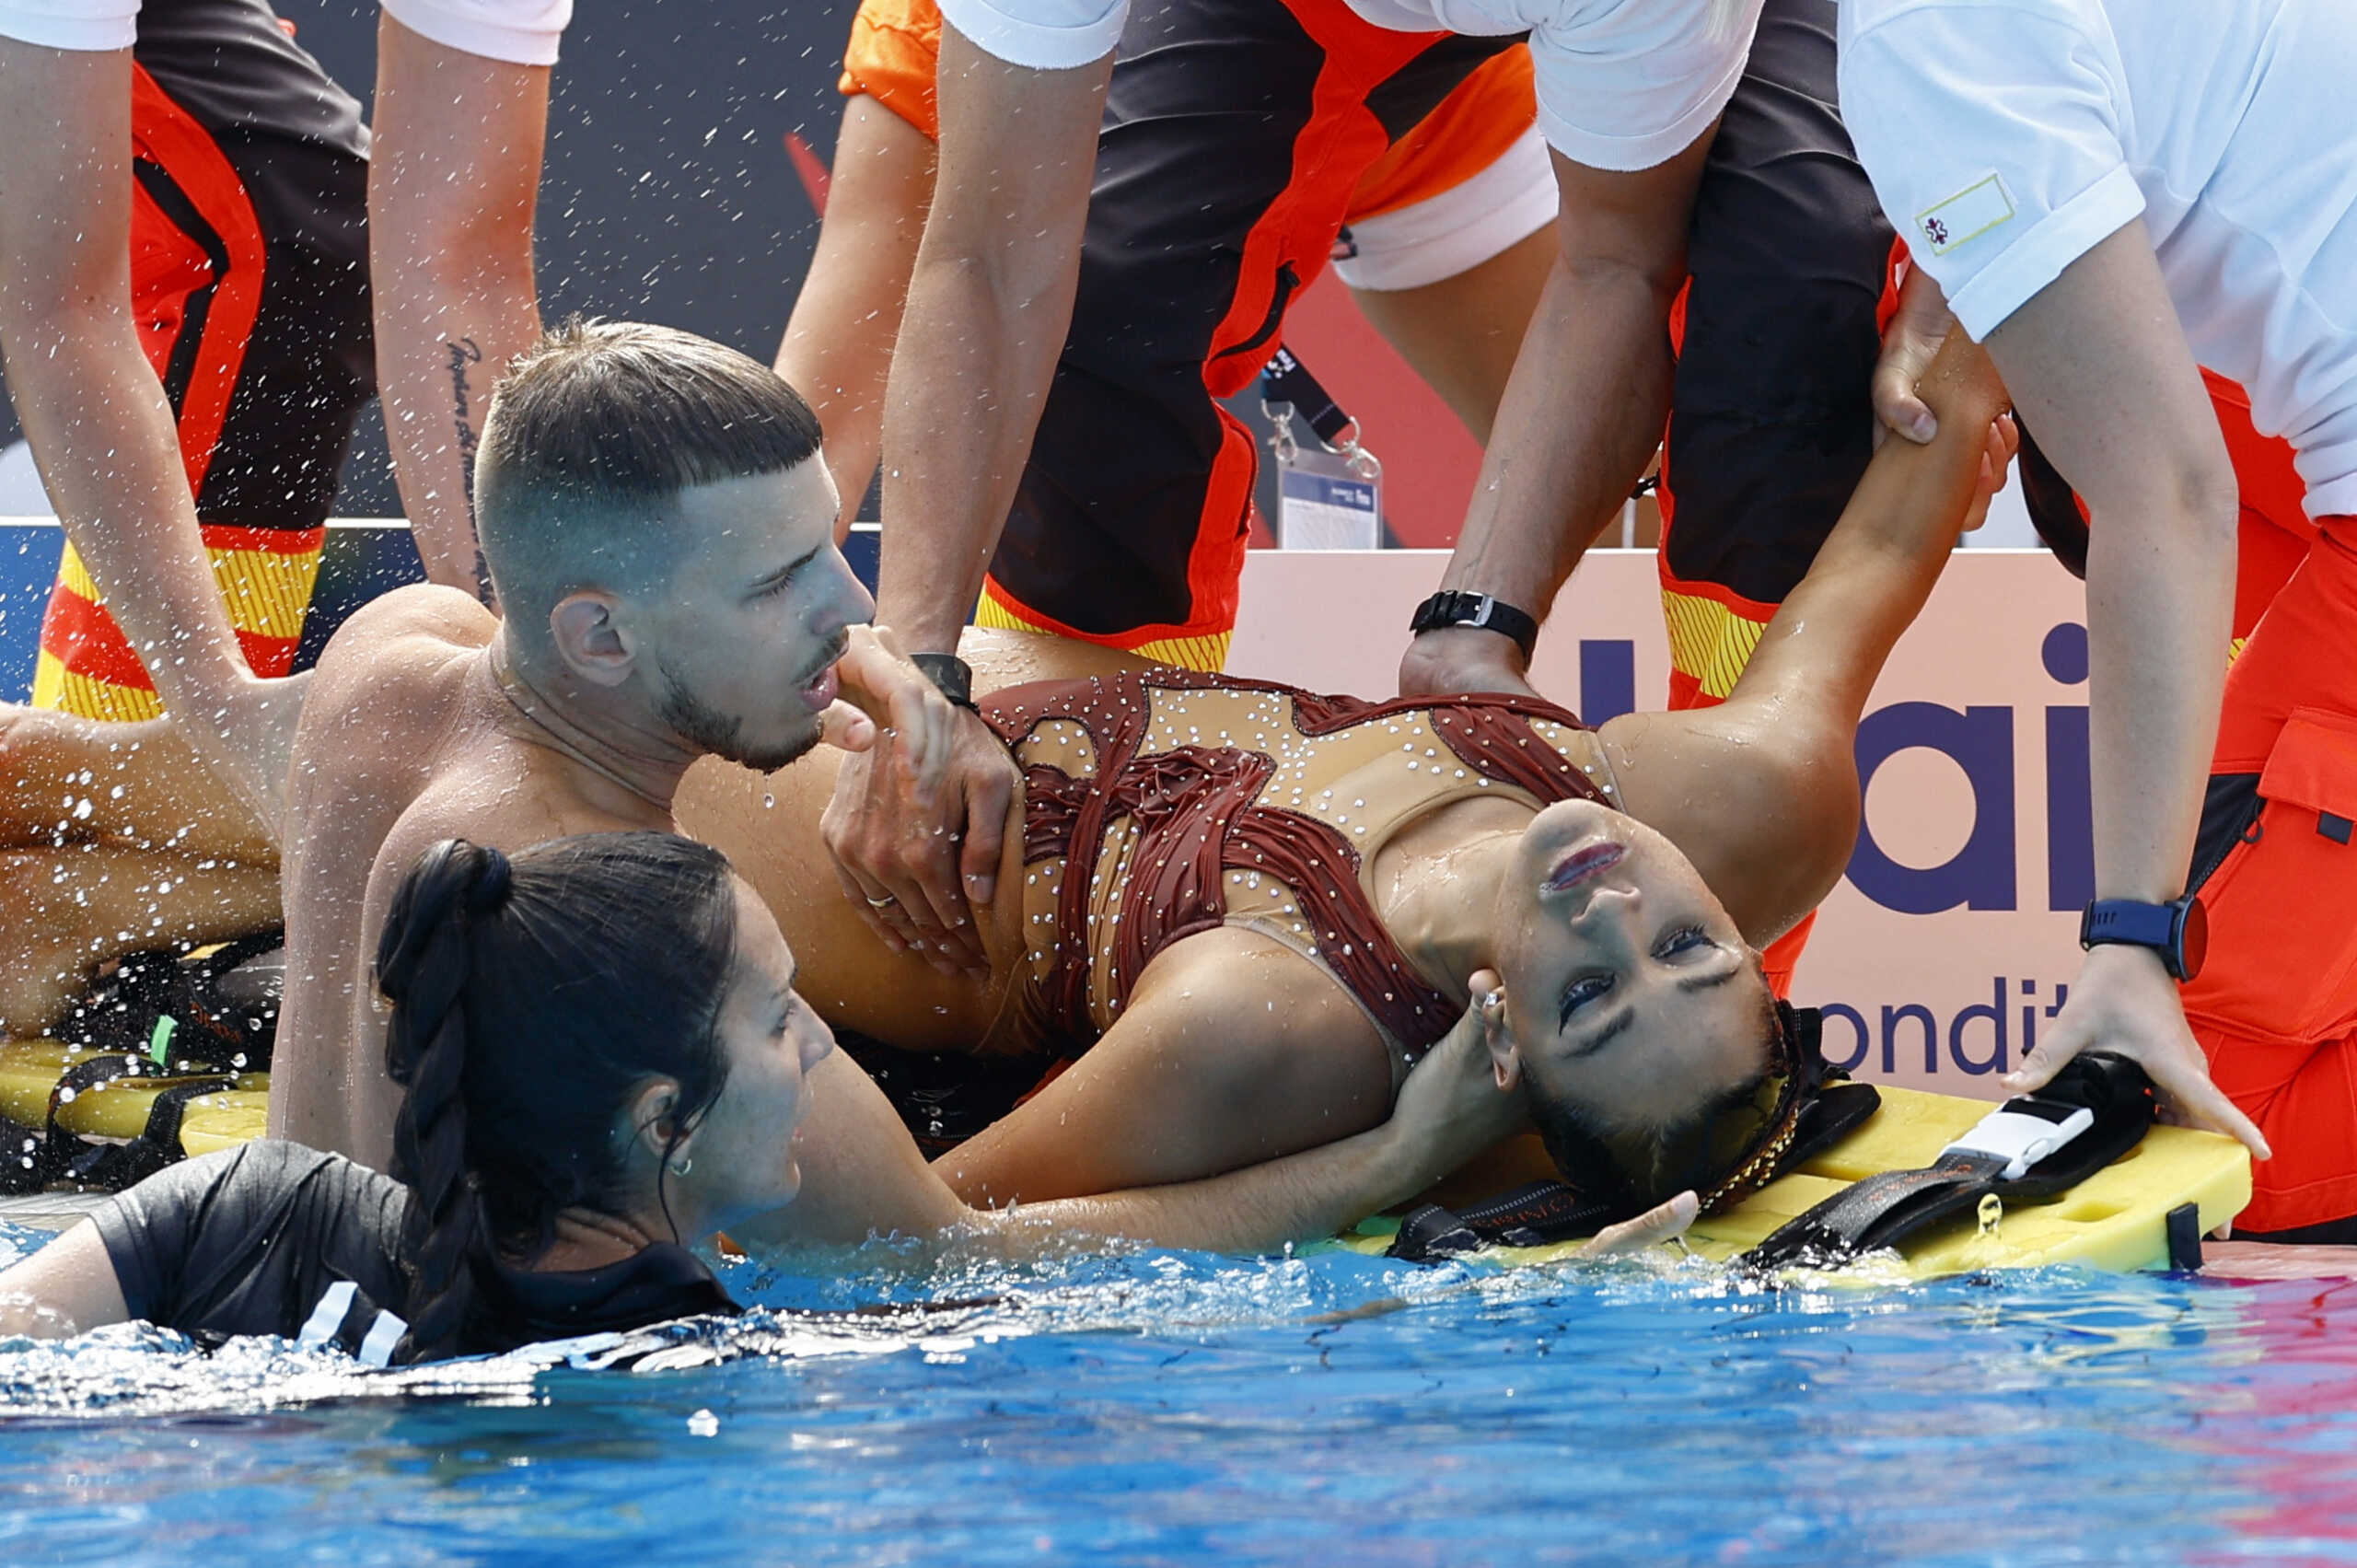 Λιποθυμία κολυμβήτριας στην πισίνα: Η ανατριχιαστική περιγραφή της προπονήτριας που την έσωσε